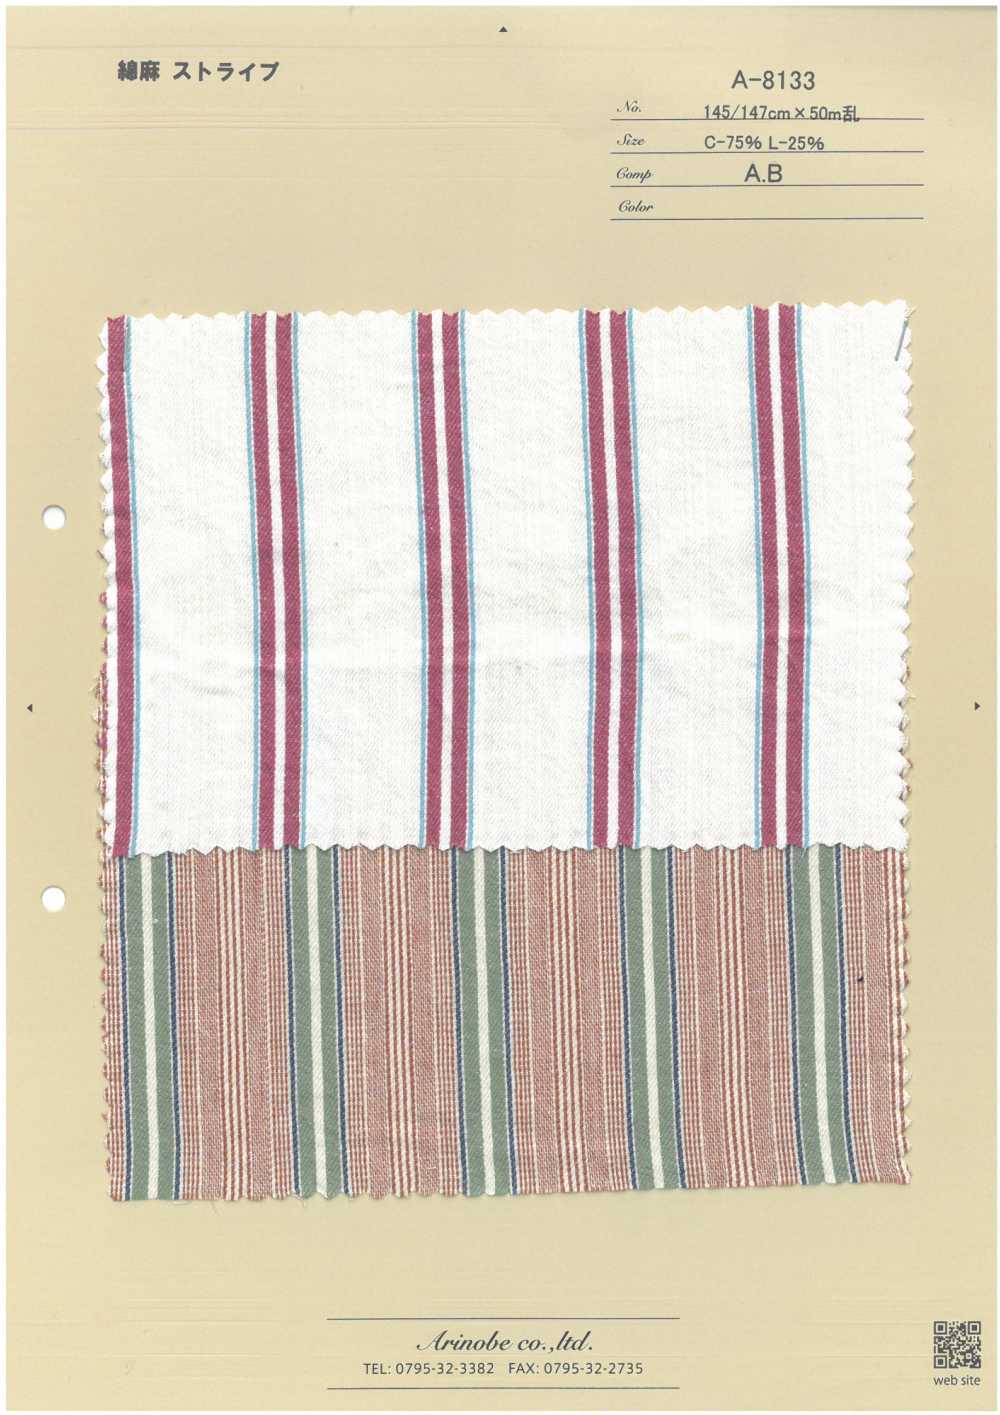 A-8133 Leinenstreifen[Textilgewebe] ARINOBE CO., LTD.